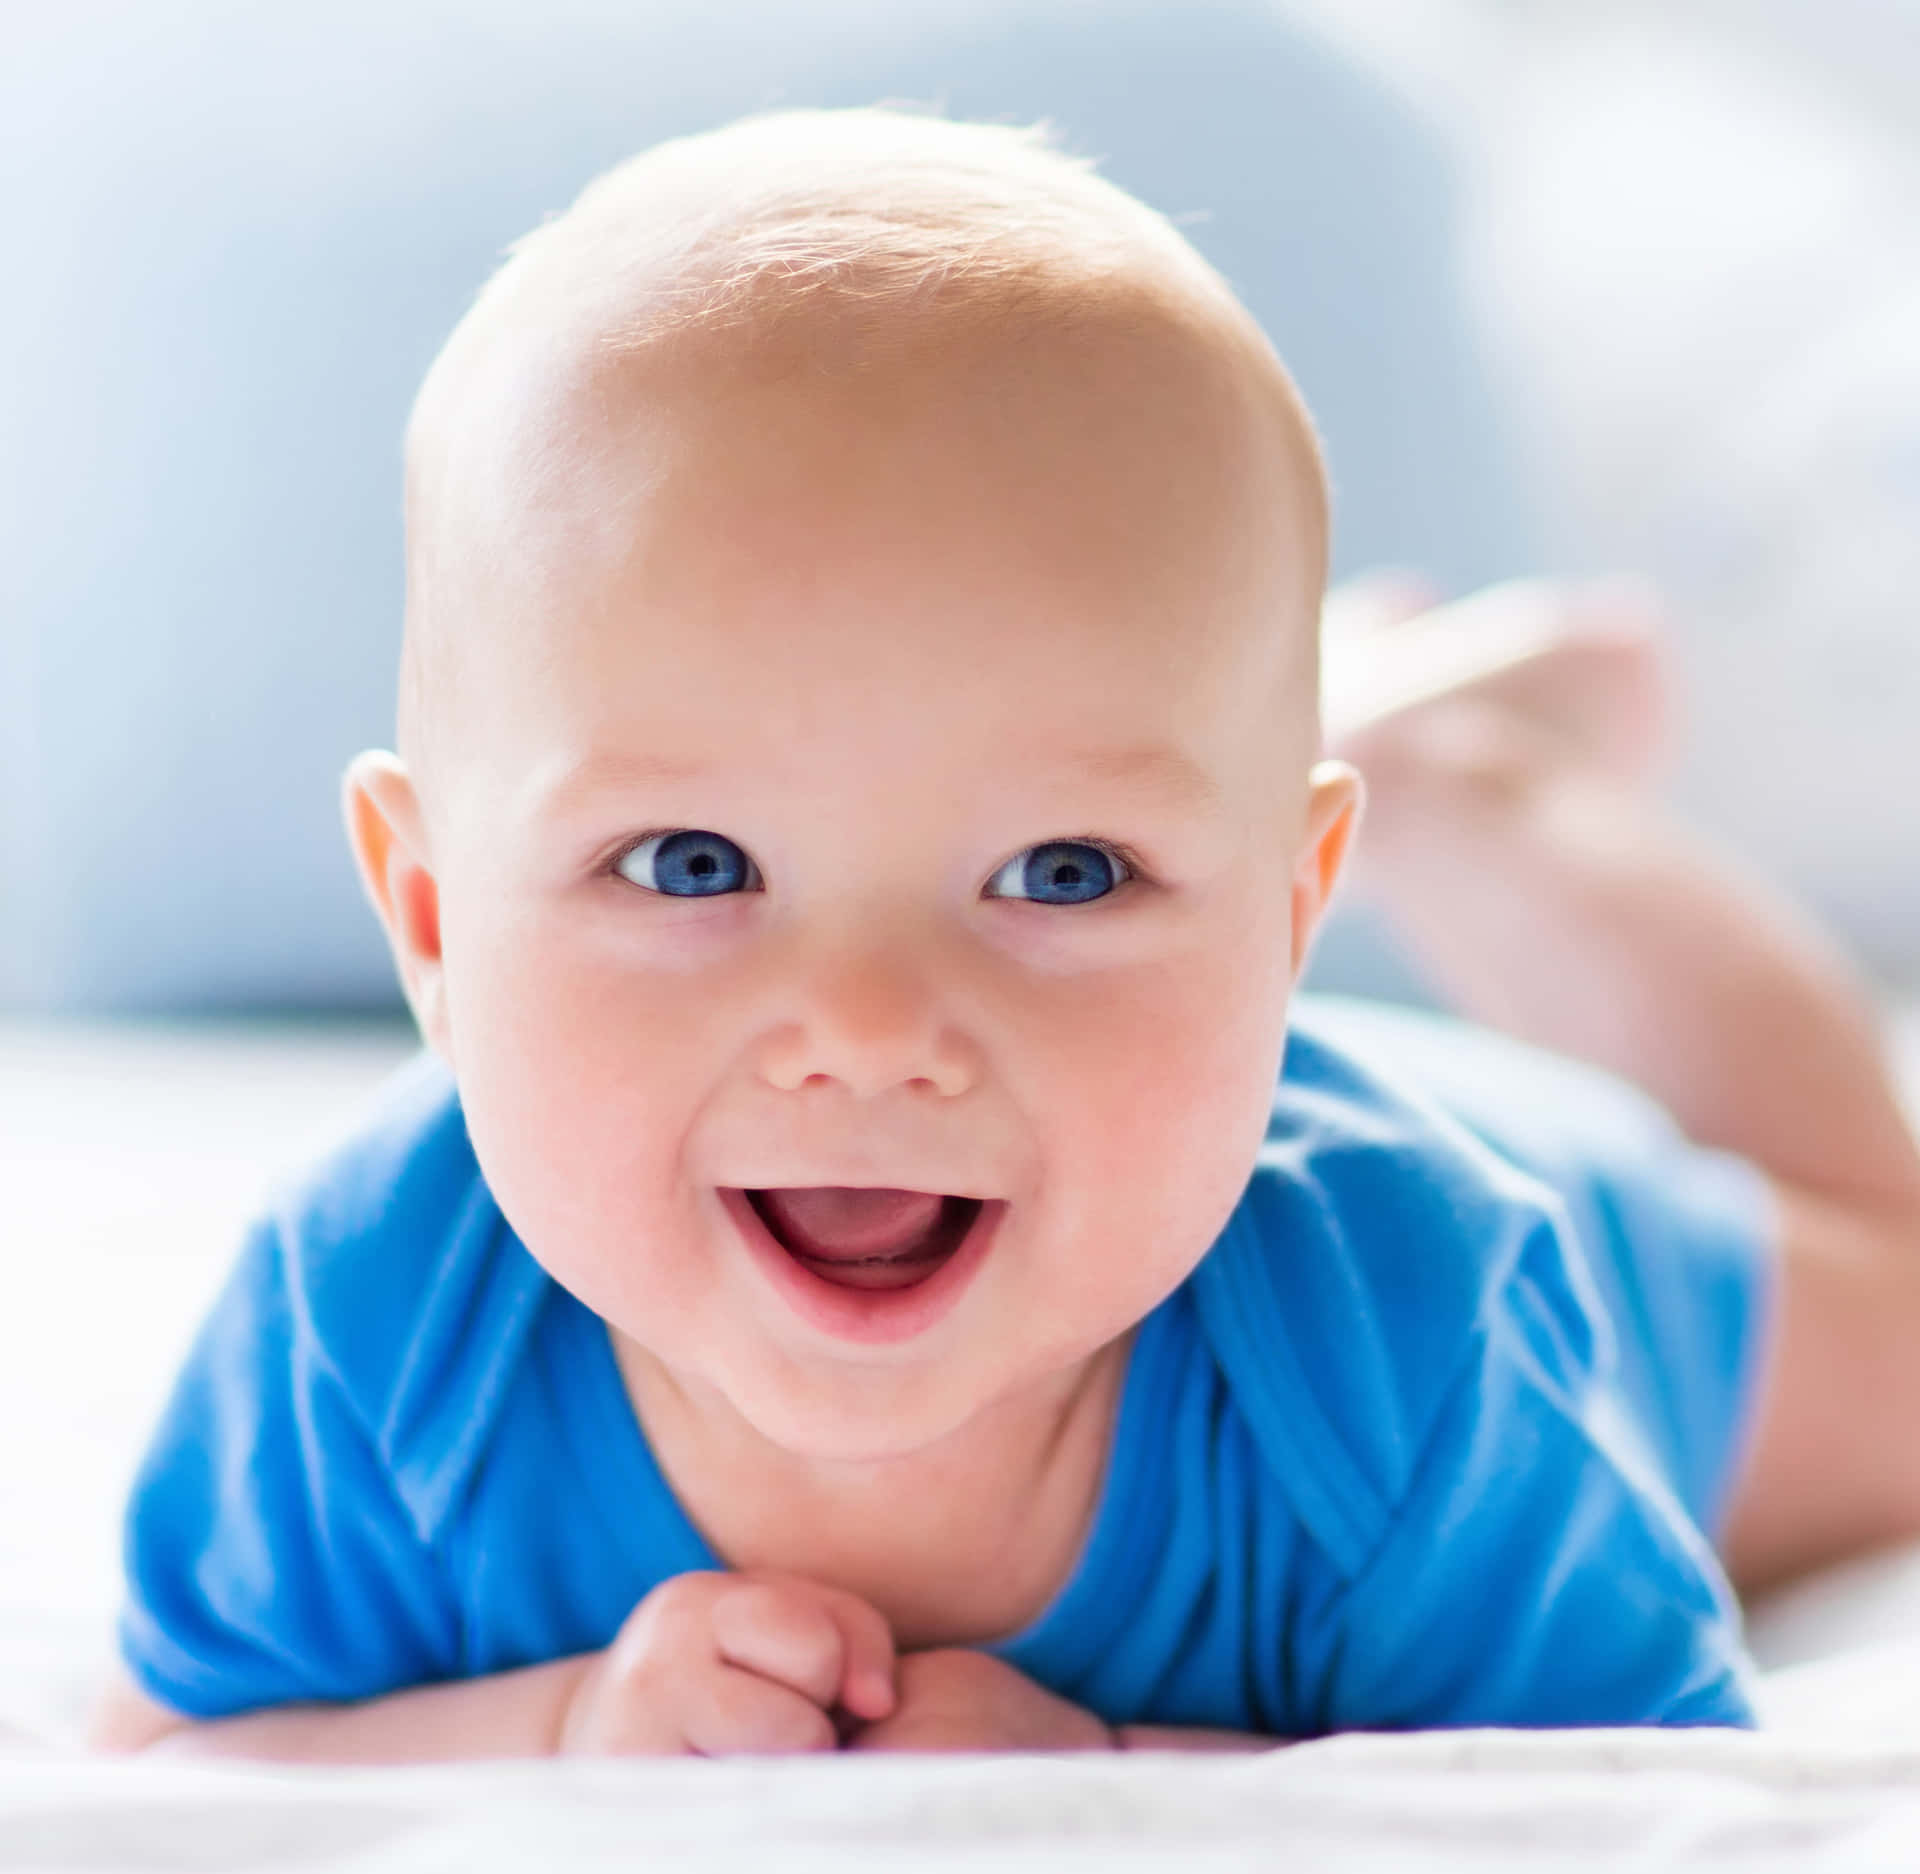 Imagende Un Bebé Niño Sonriente En Azul